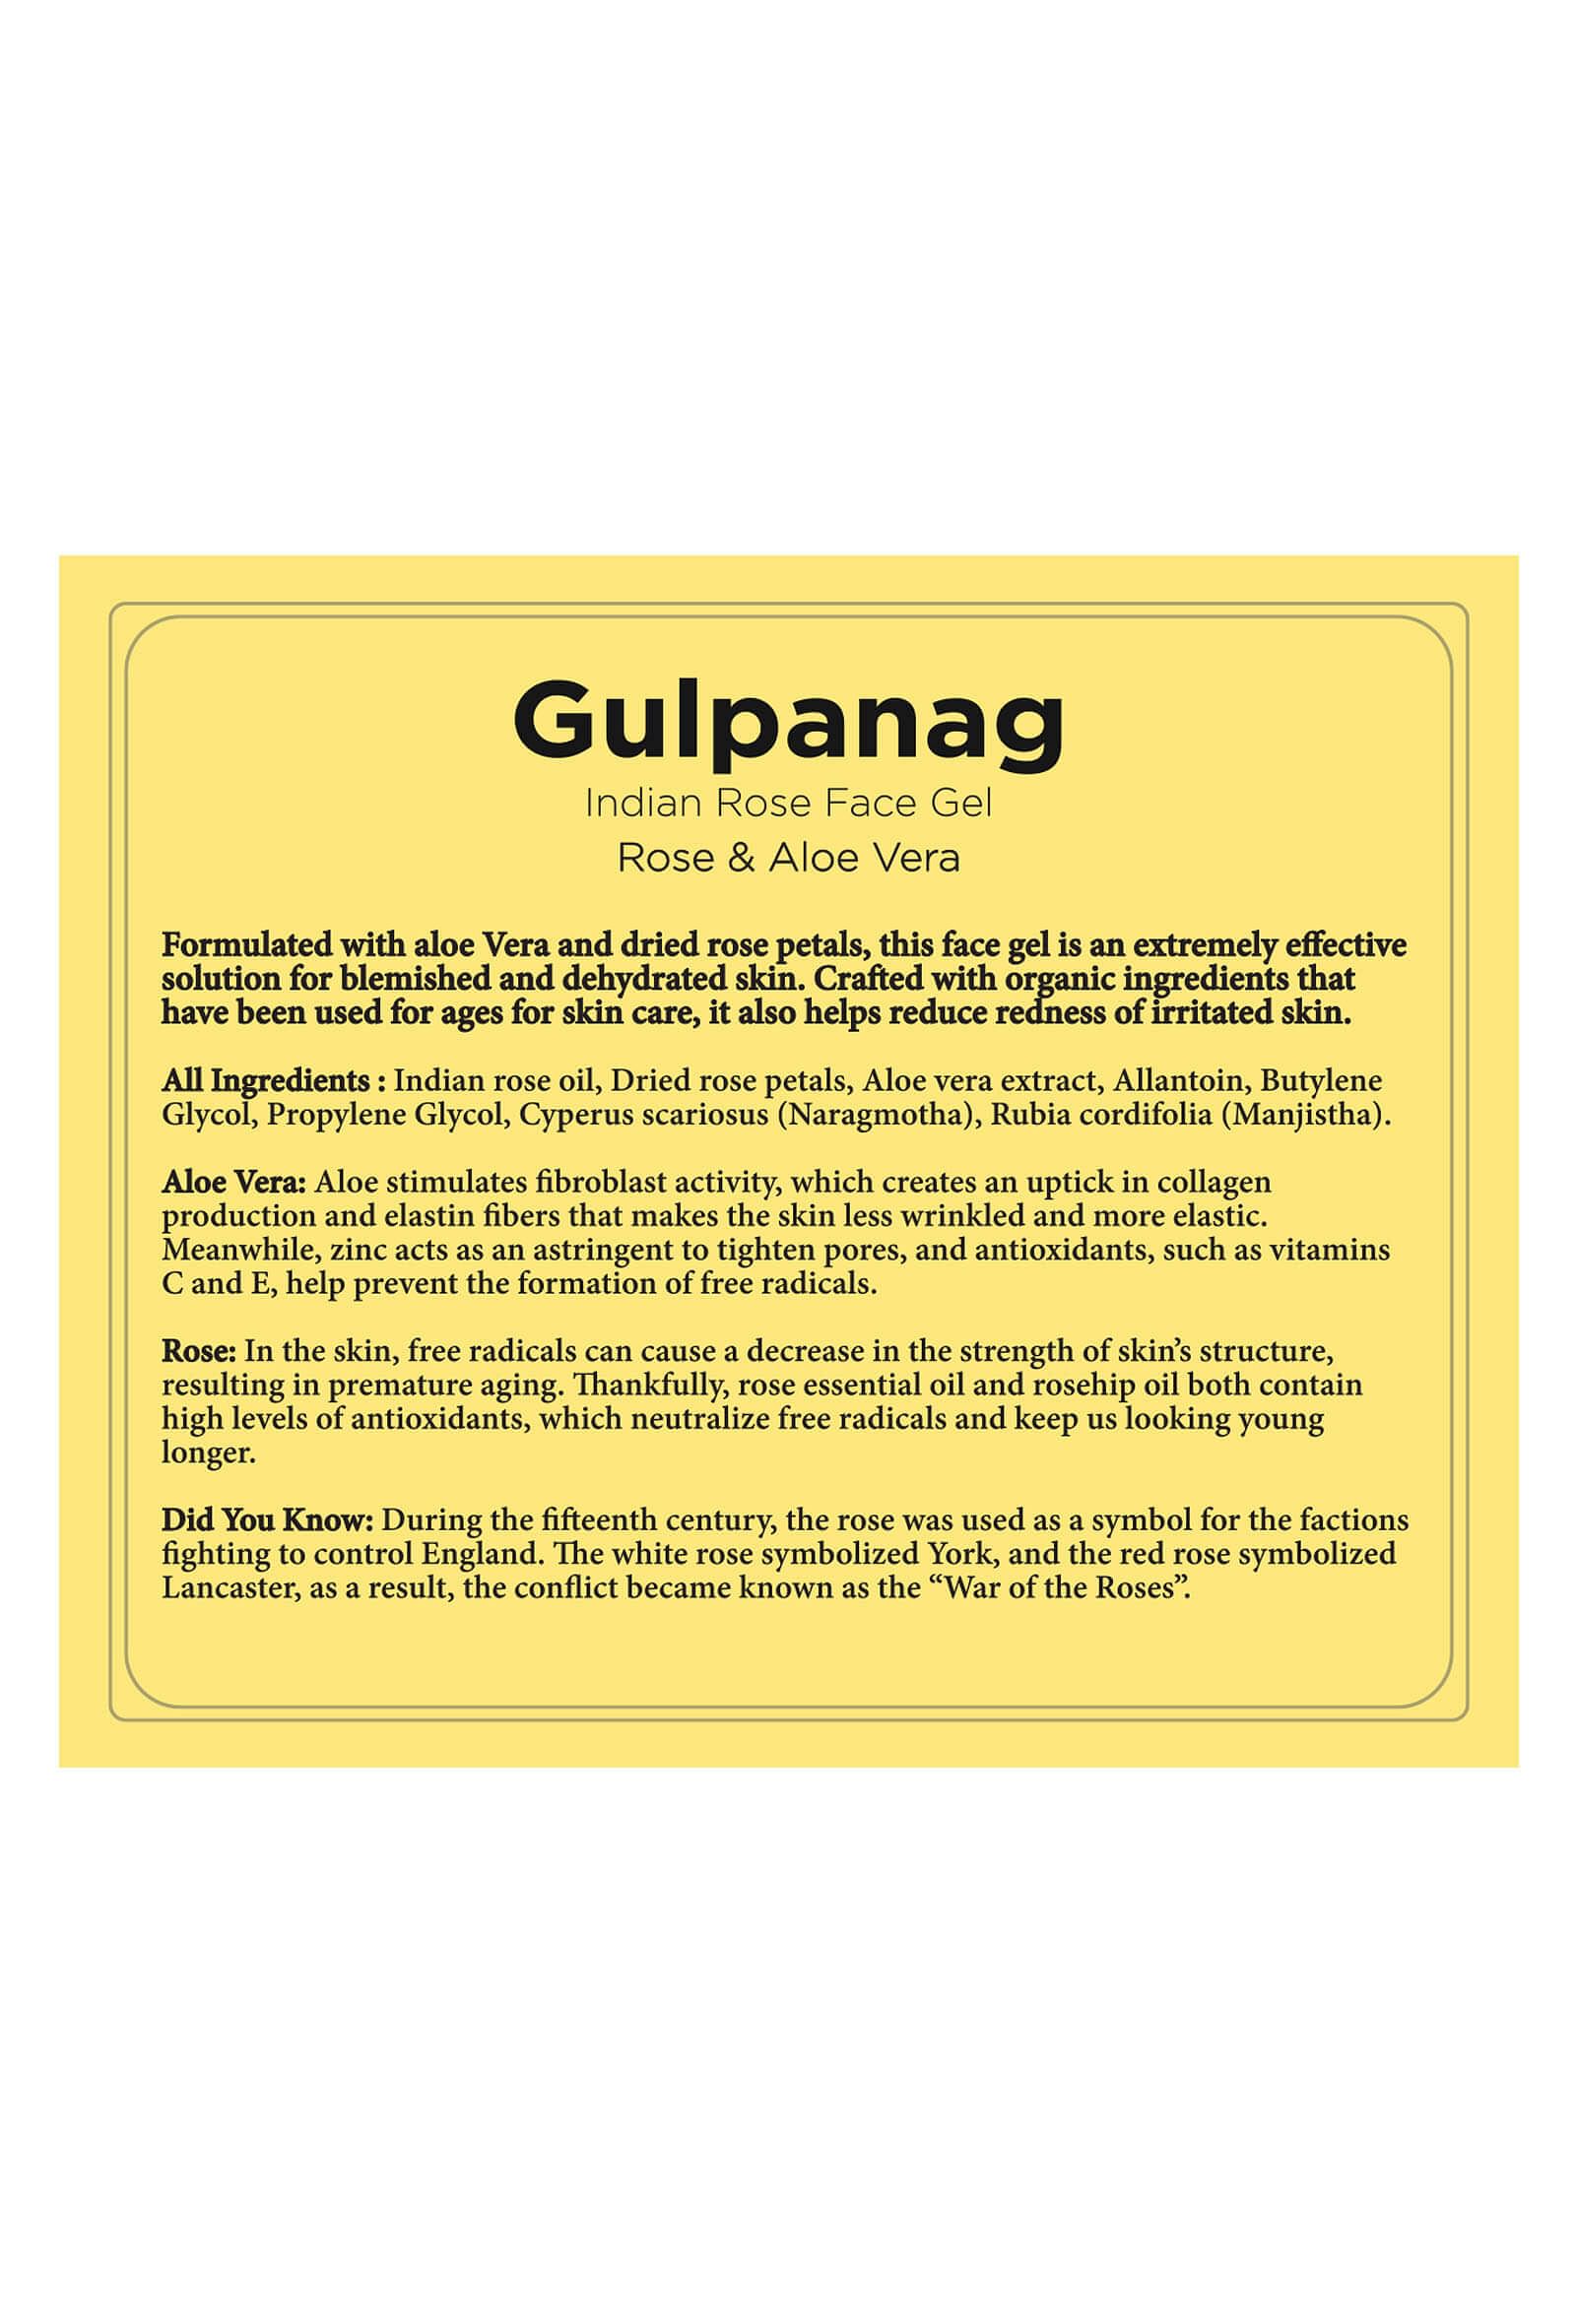 Gulpanag- Indian Rose Face Gel-100gms